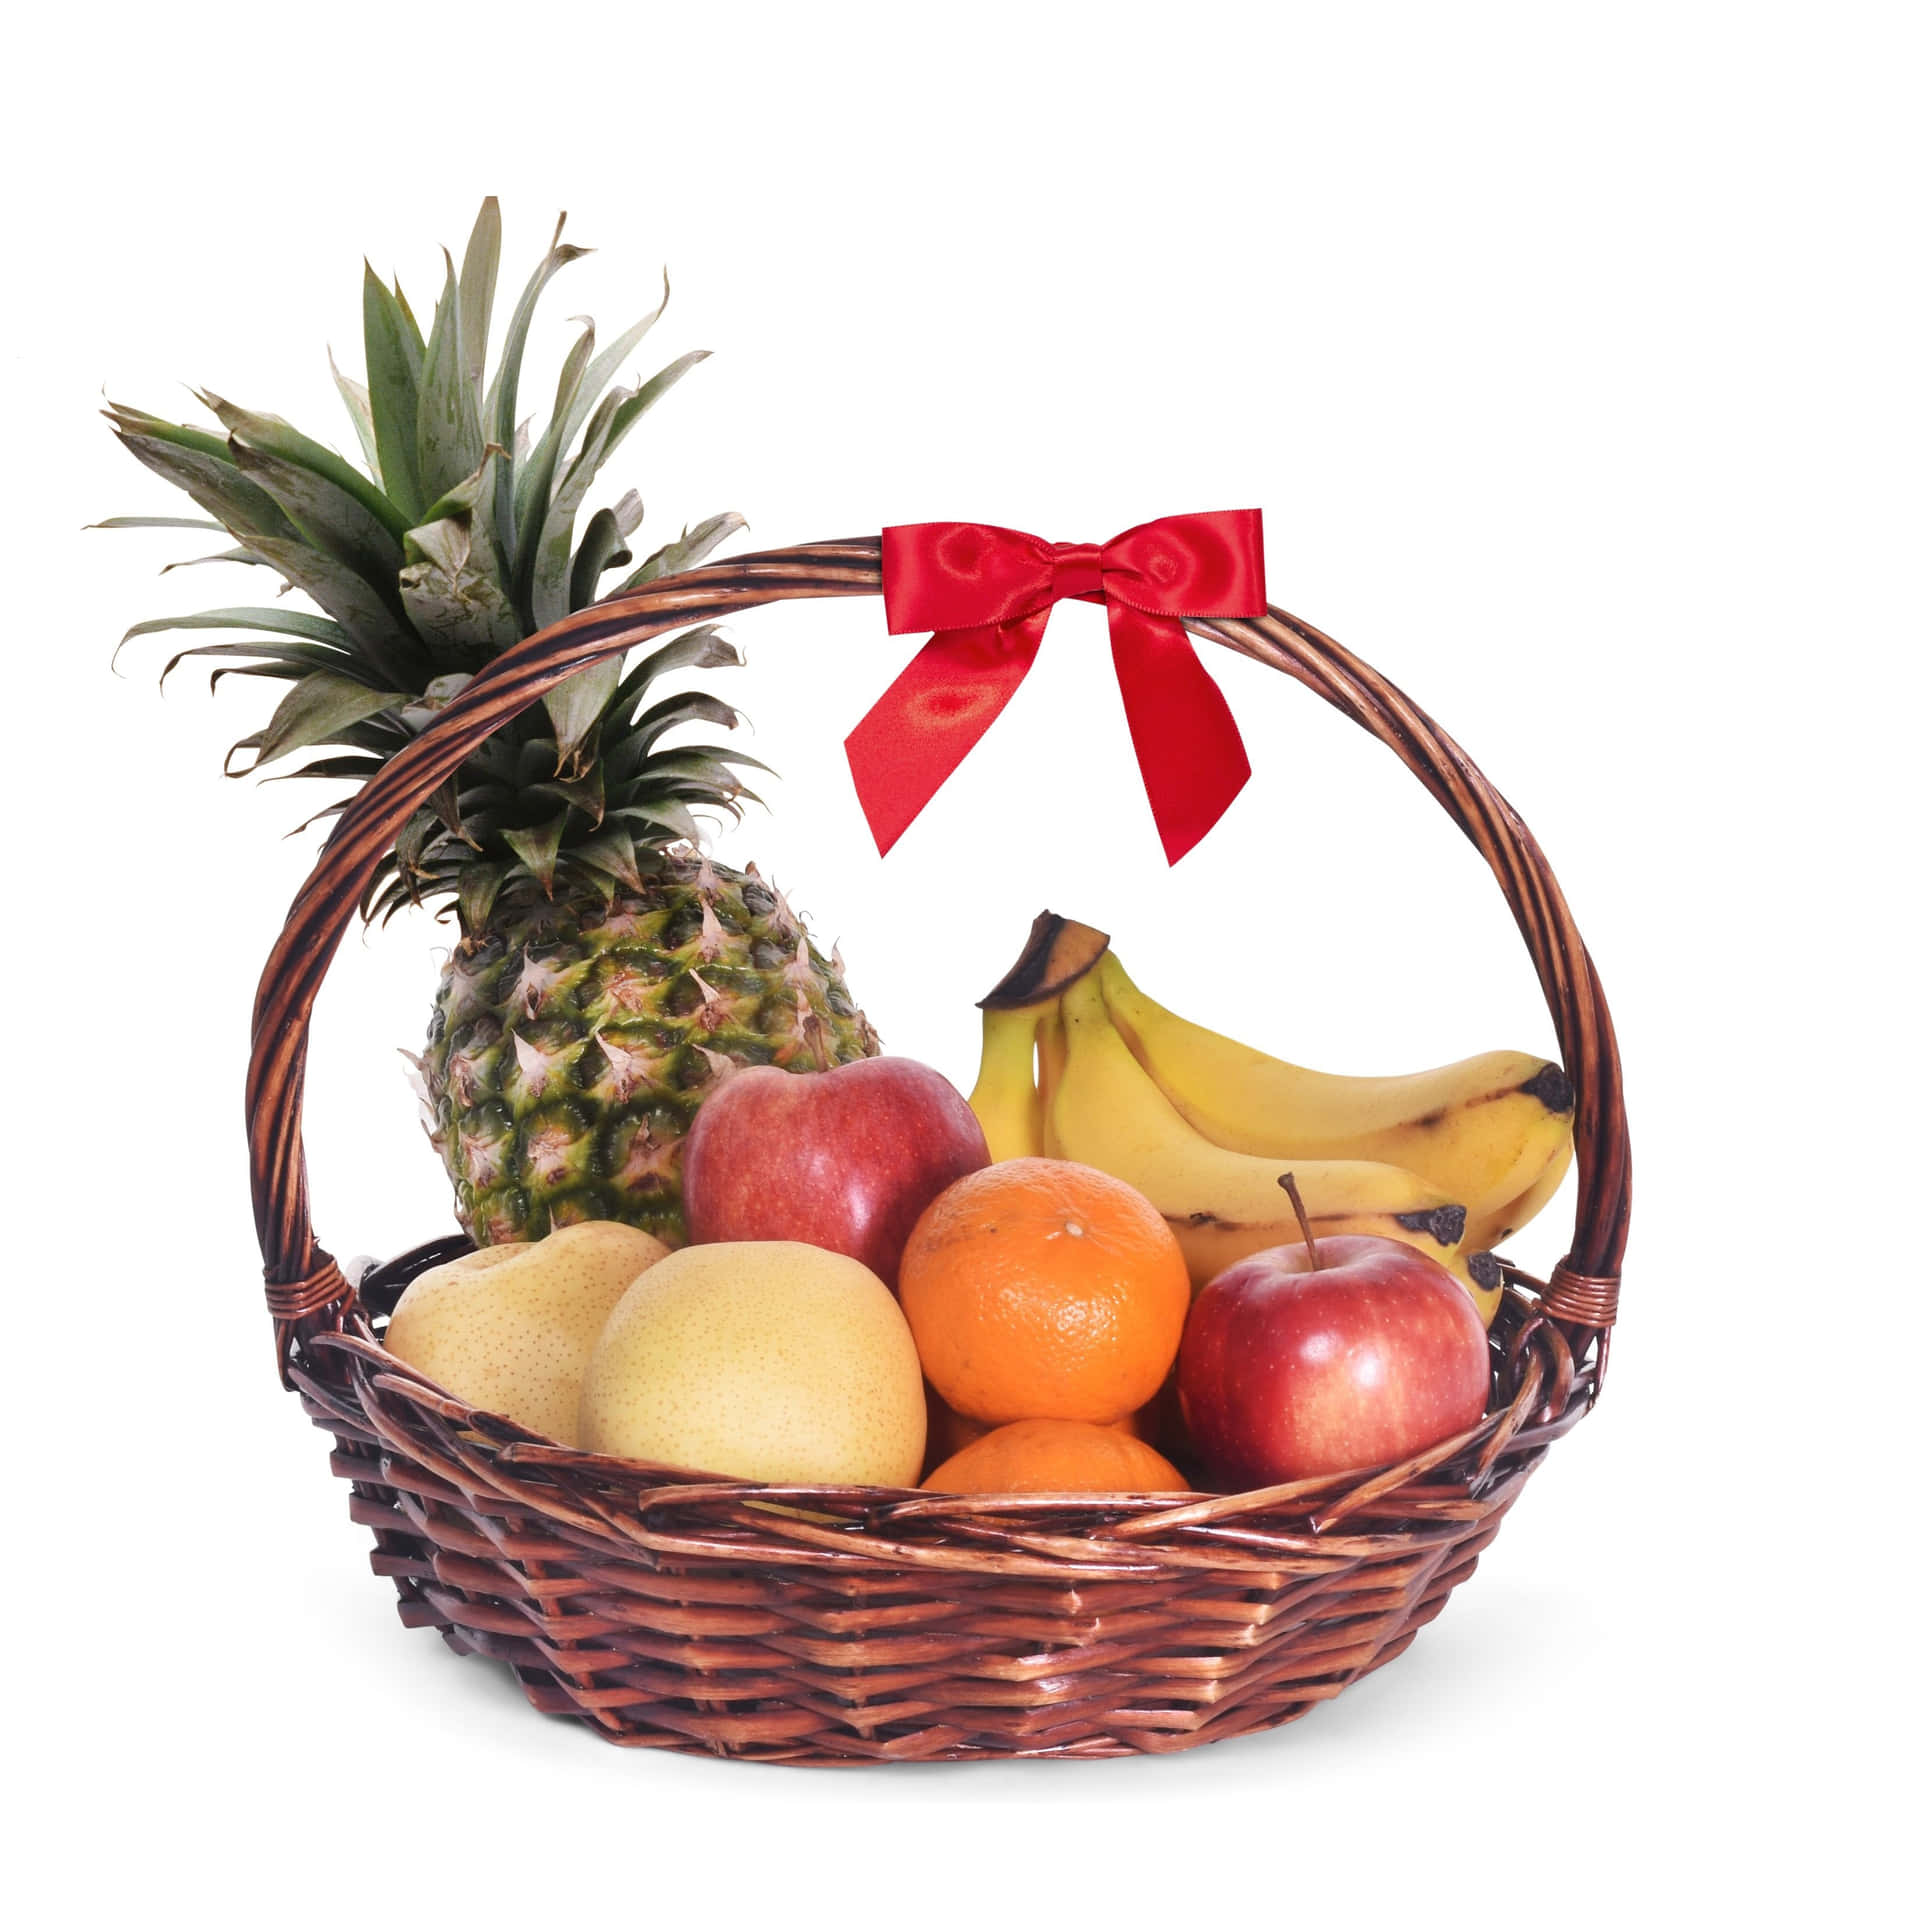 Enläcker Servering Av Fruits Basket